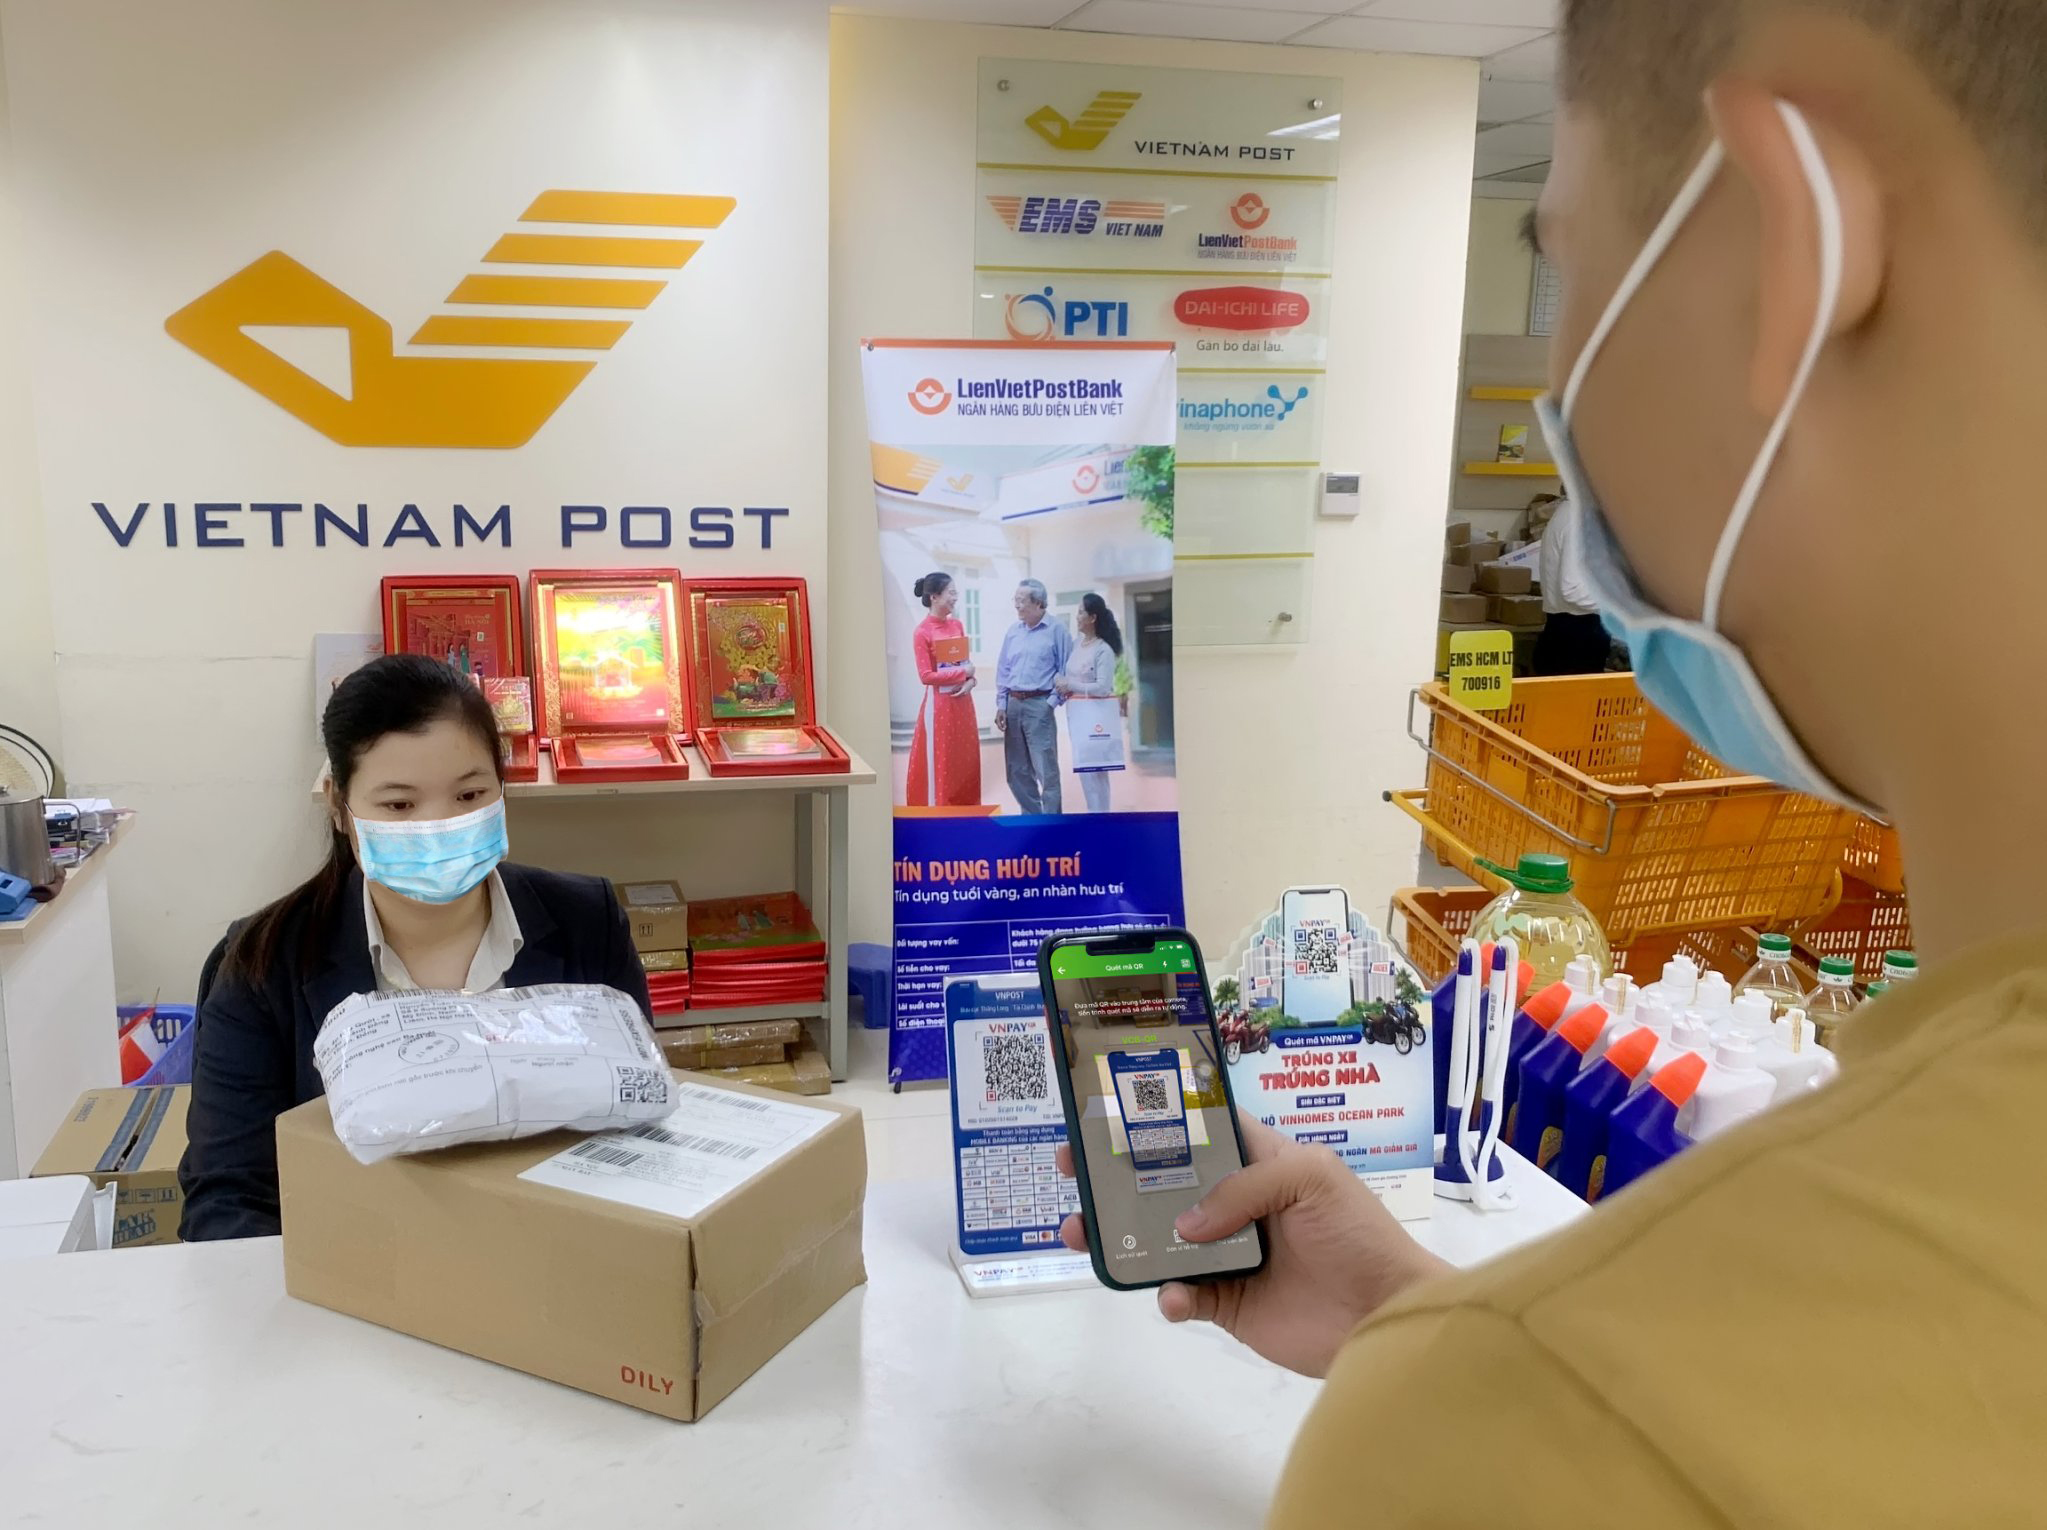 Vietnam Post kì vọng dịch vụ sẽ mở ra nhiều cơ hội kinh doanh mới, đặc biệt đối với các dịch vụ số.